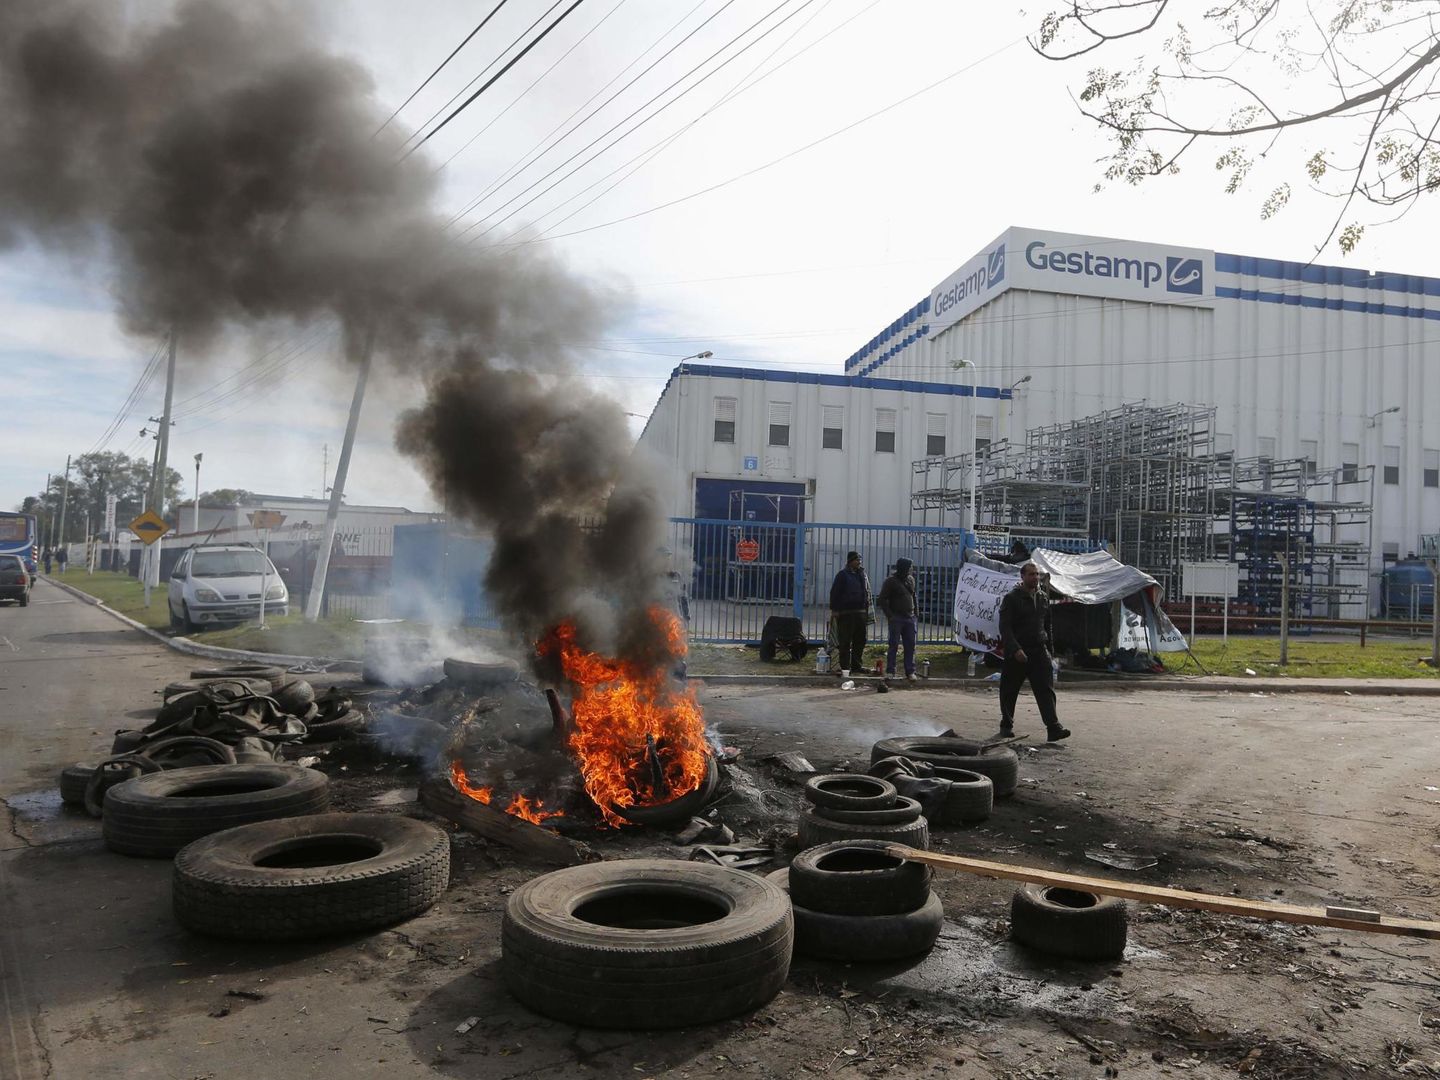 Foto de archivo de protestas en la fábrica de Gestamp en Argentia en 2014. (Reuters)